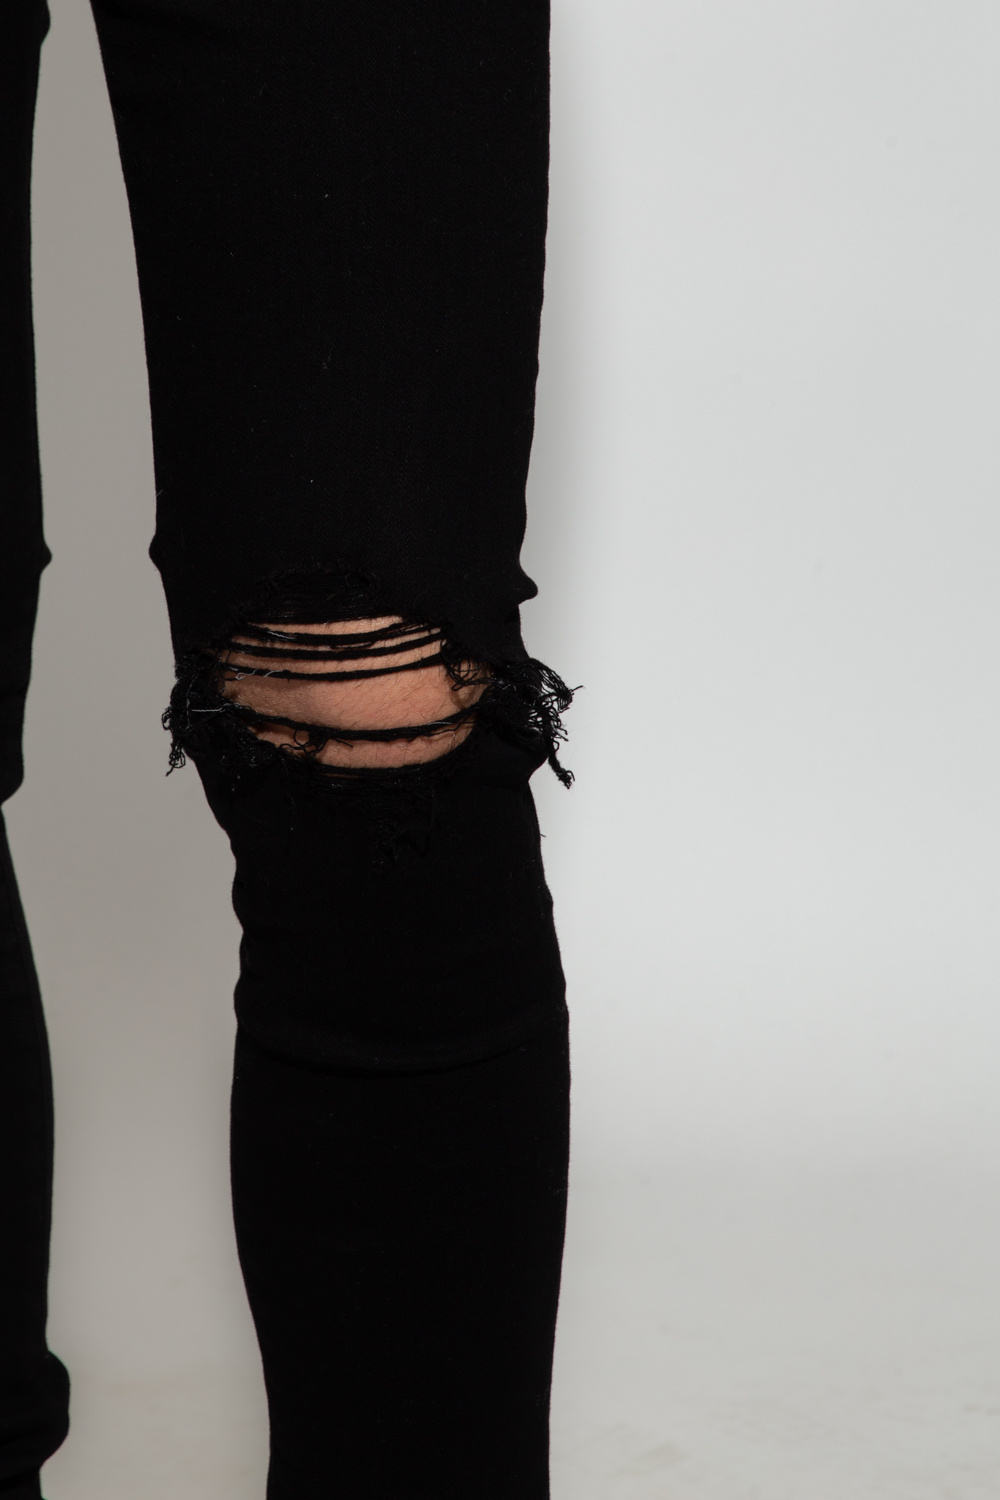 Black 'Broken' skinny jeans Amiri - Vitkac Canada